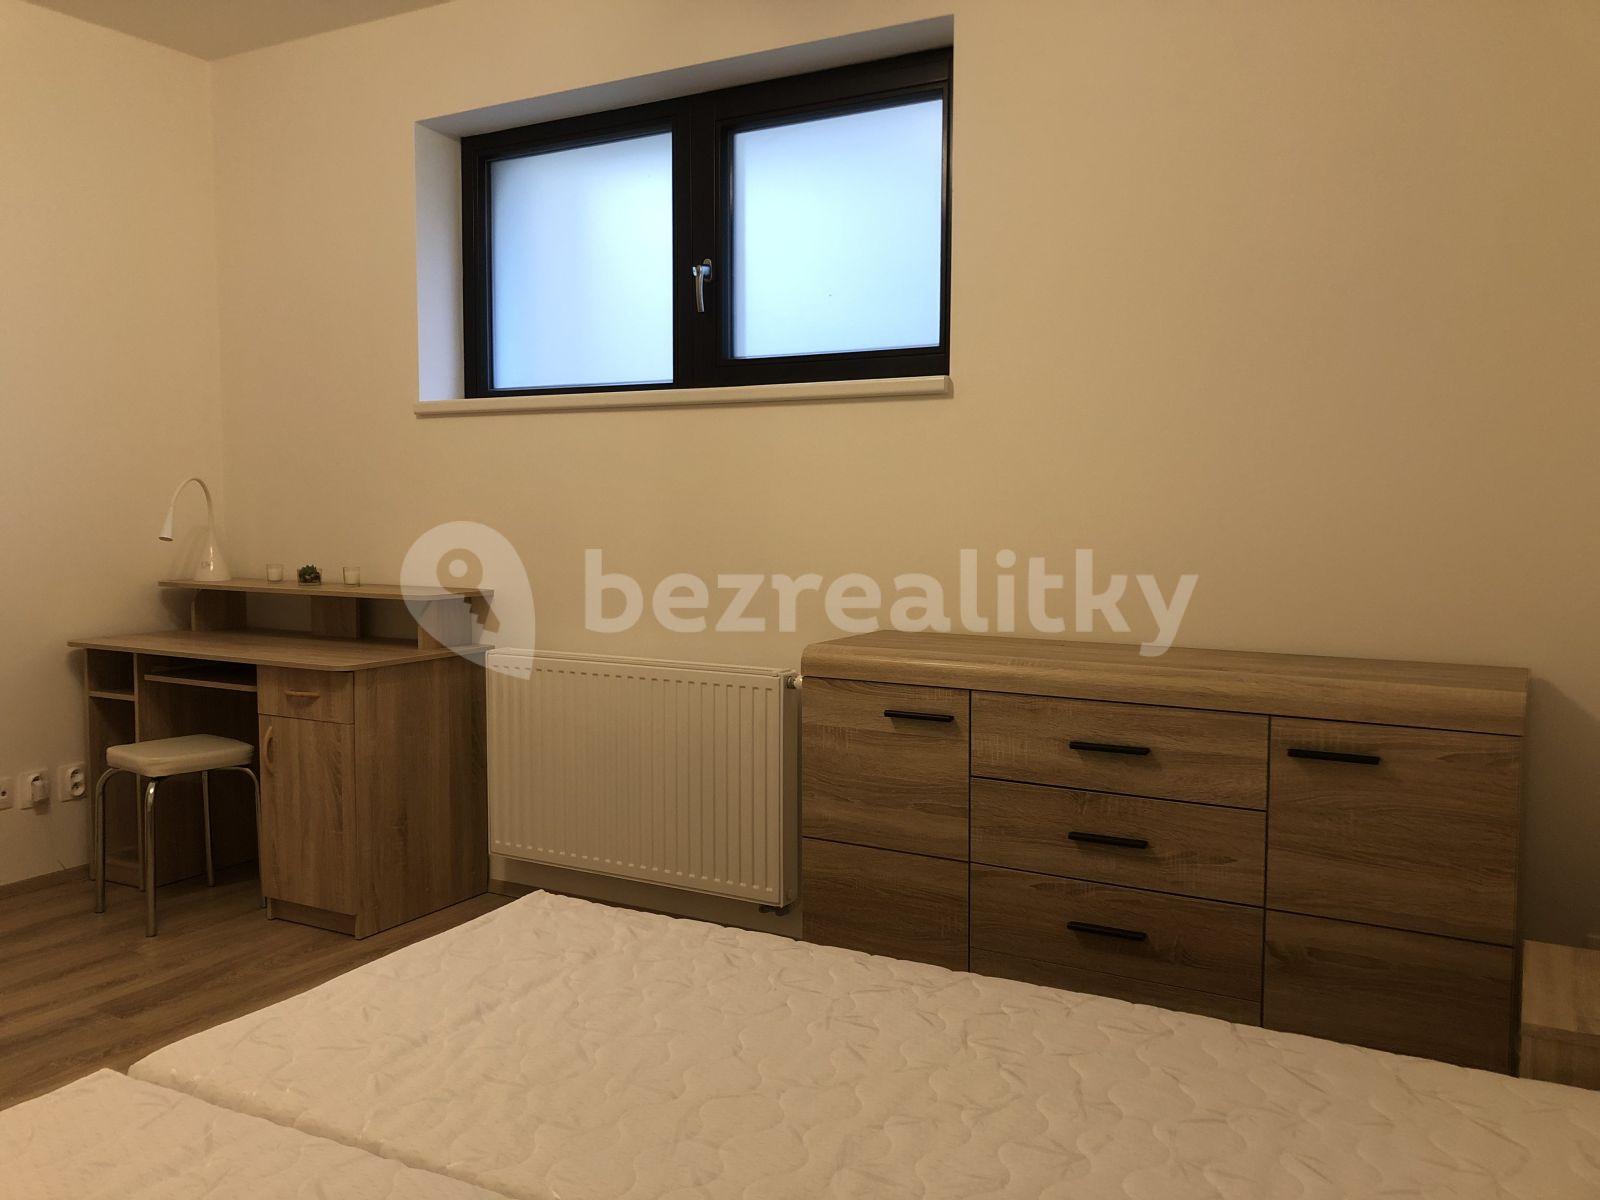 1 bedroom with open-plan kitchen flat to rent, 60 m², Fakultní, Brandýs nad Labem-Stará Boleslav, Středočeský Region